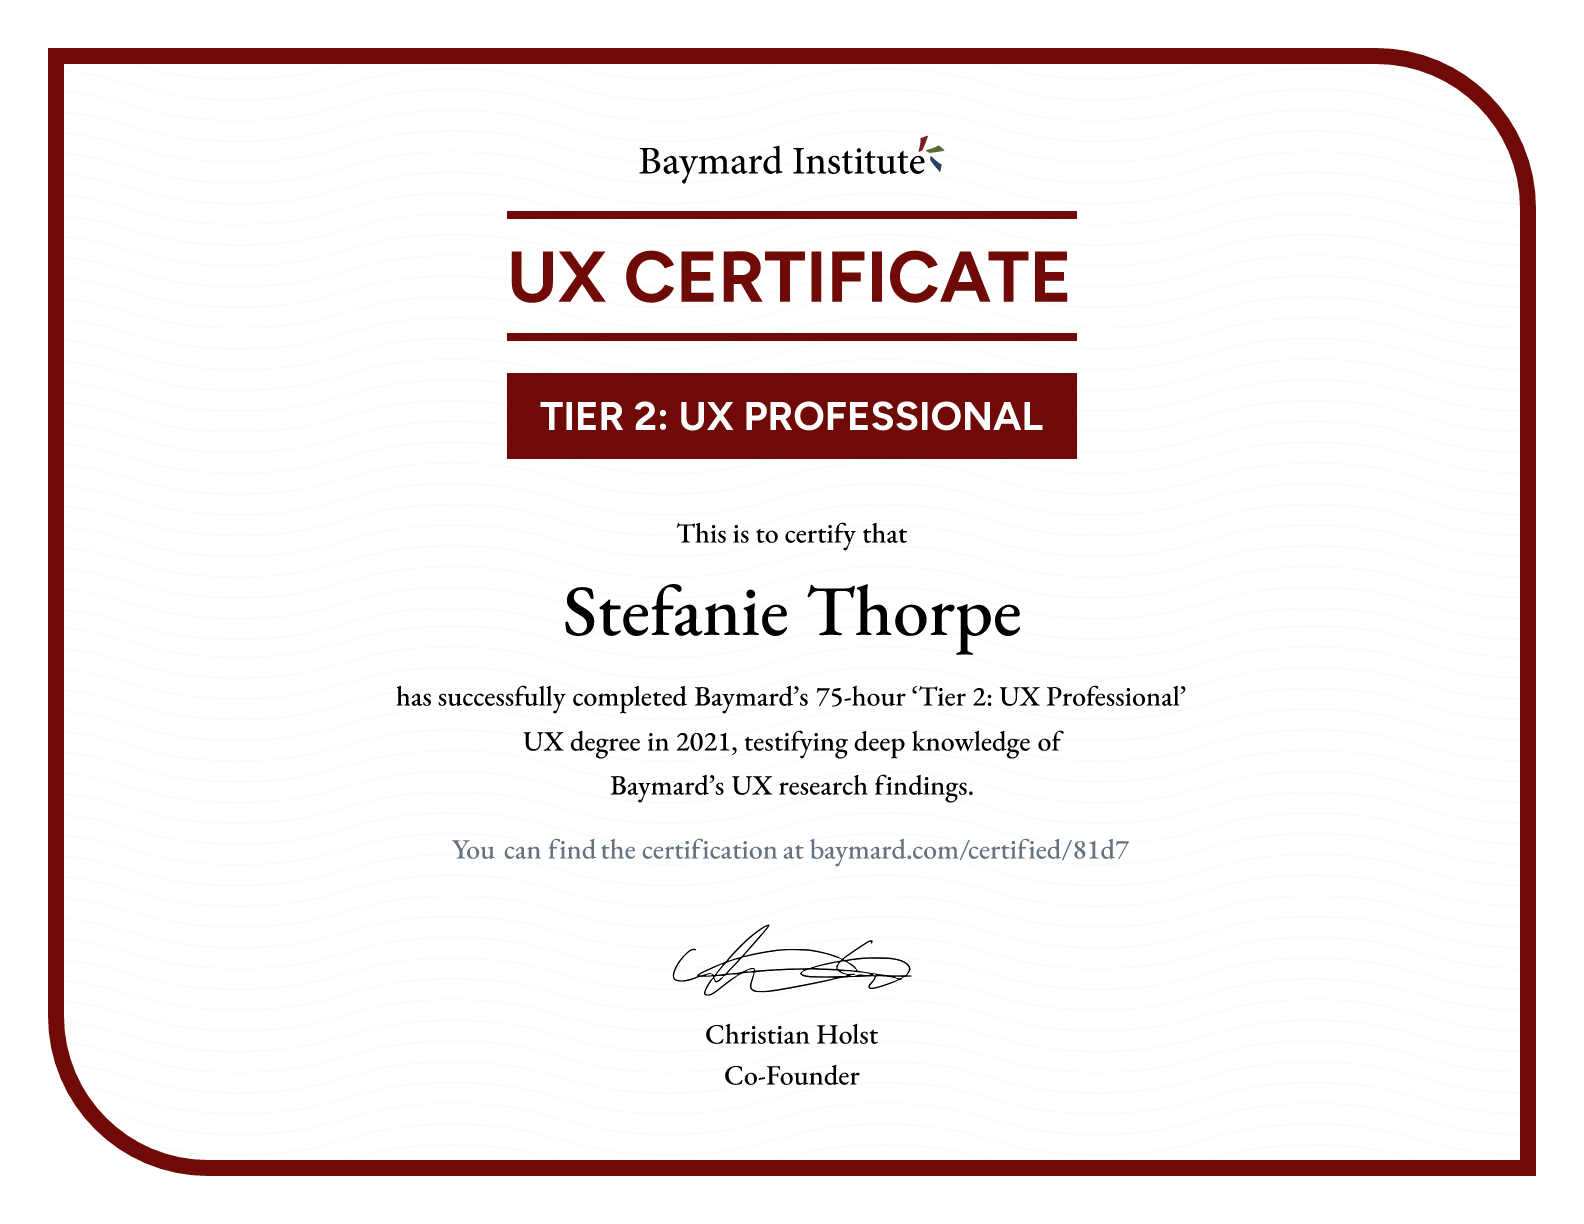 Stefanie Thorpe’s certificate